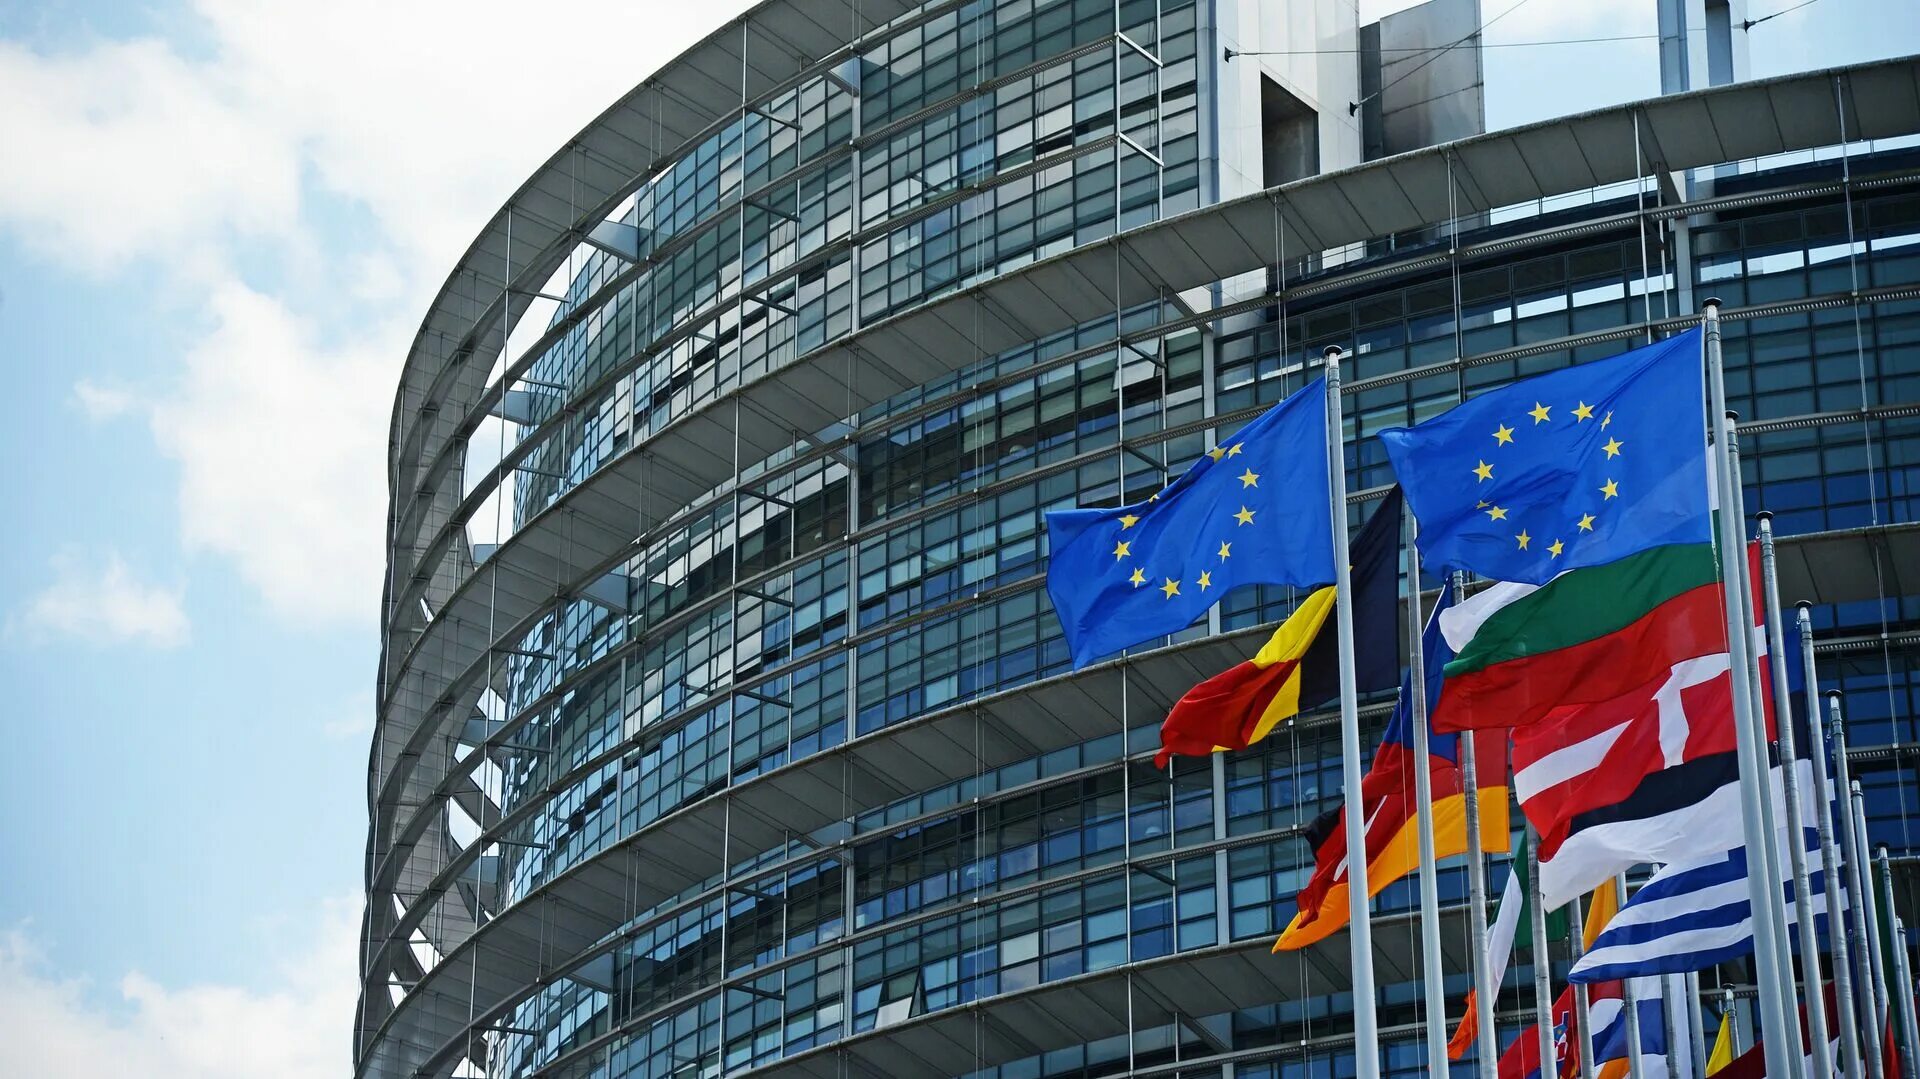 Совет европы оон. Здание Европарламента в Страсбурге. Европарламент Брюссель. Европейский парламент в Брюсселе. Брюссель штаб квартира Евросоюза.